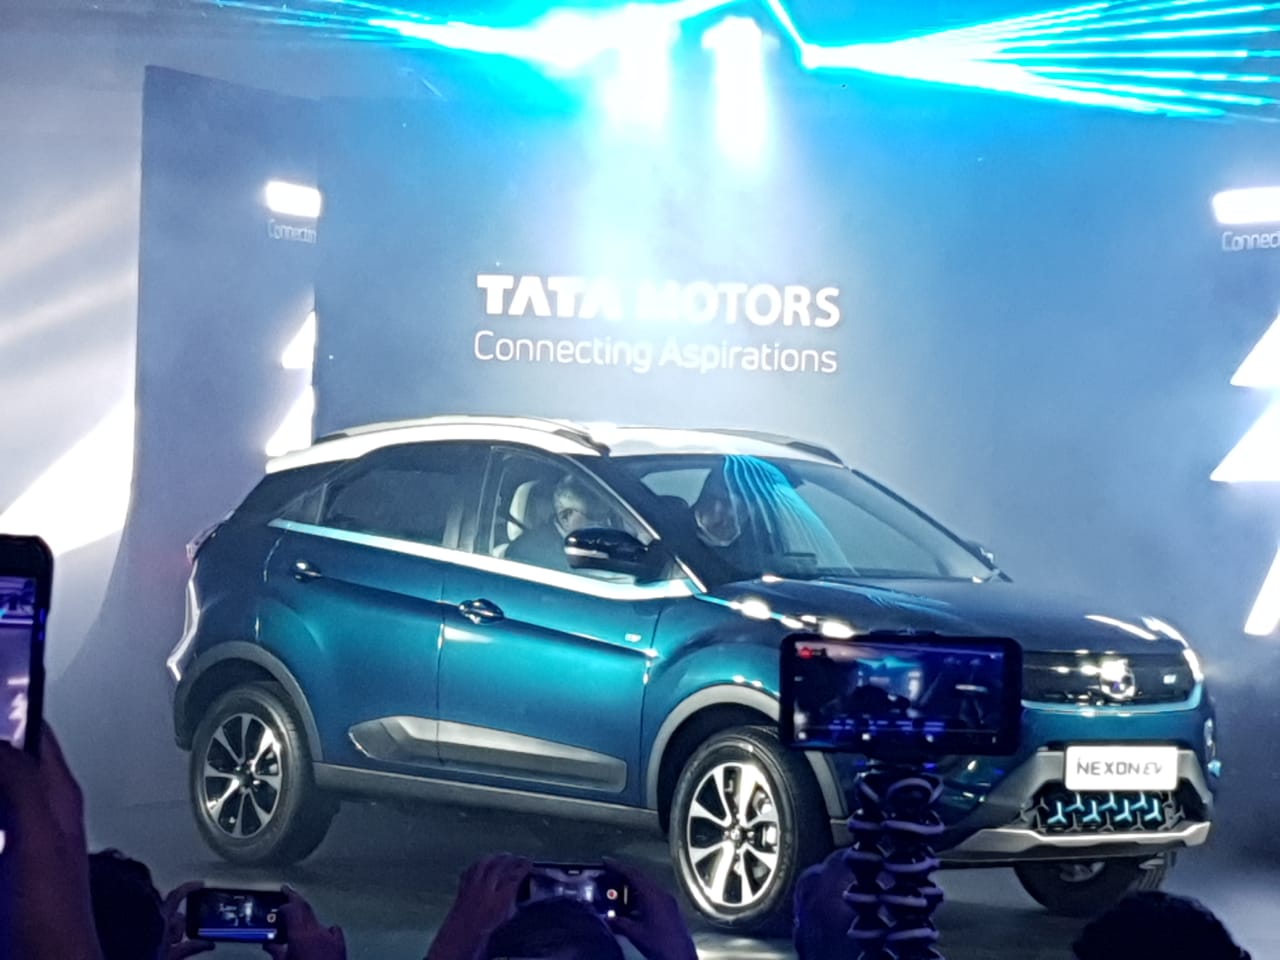 Tata Nexon EV ही कंपनीची पहिलीच इलेक्ट्रिक एसयूव्ही कार असून यामध्ये नवीन झिपट्रॉन तंत्रज्ञानाचा वापर करण्यात आला आहे.